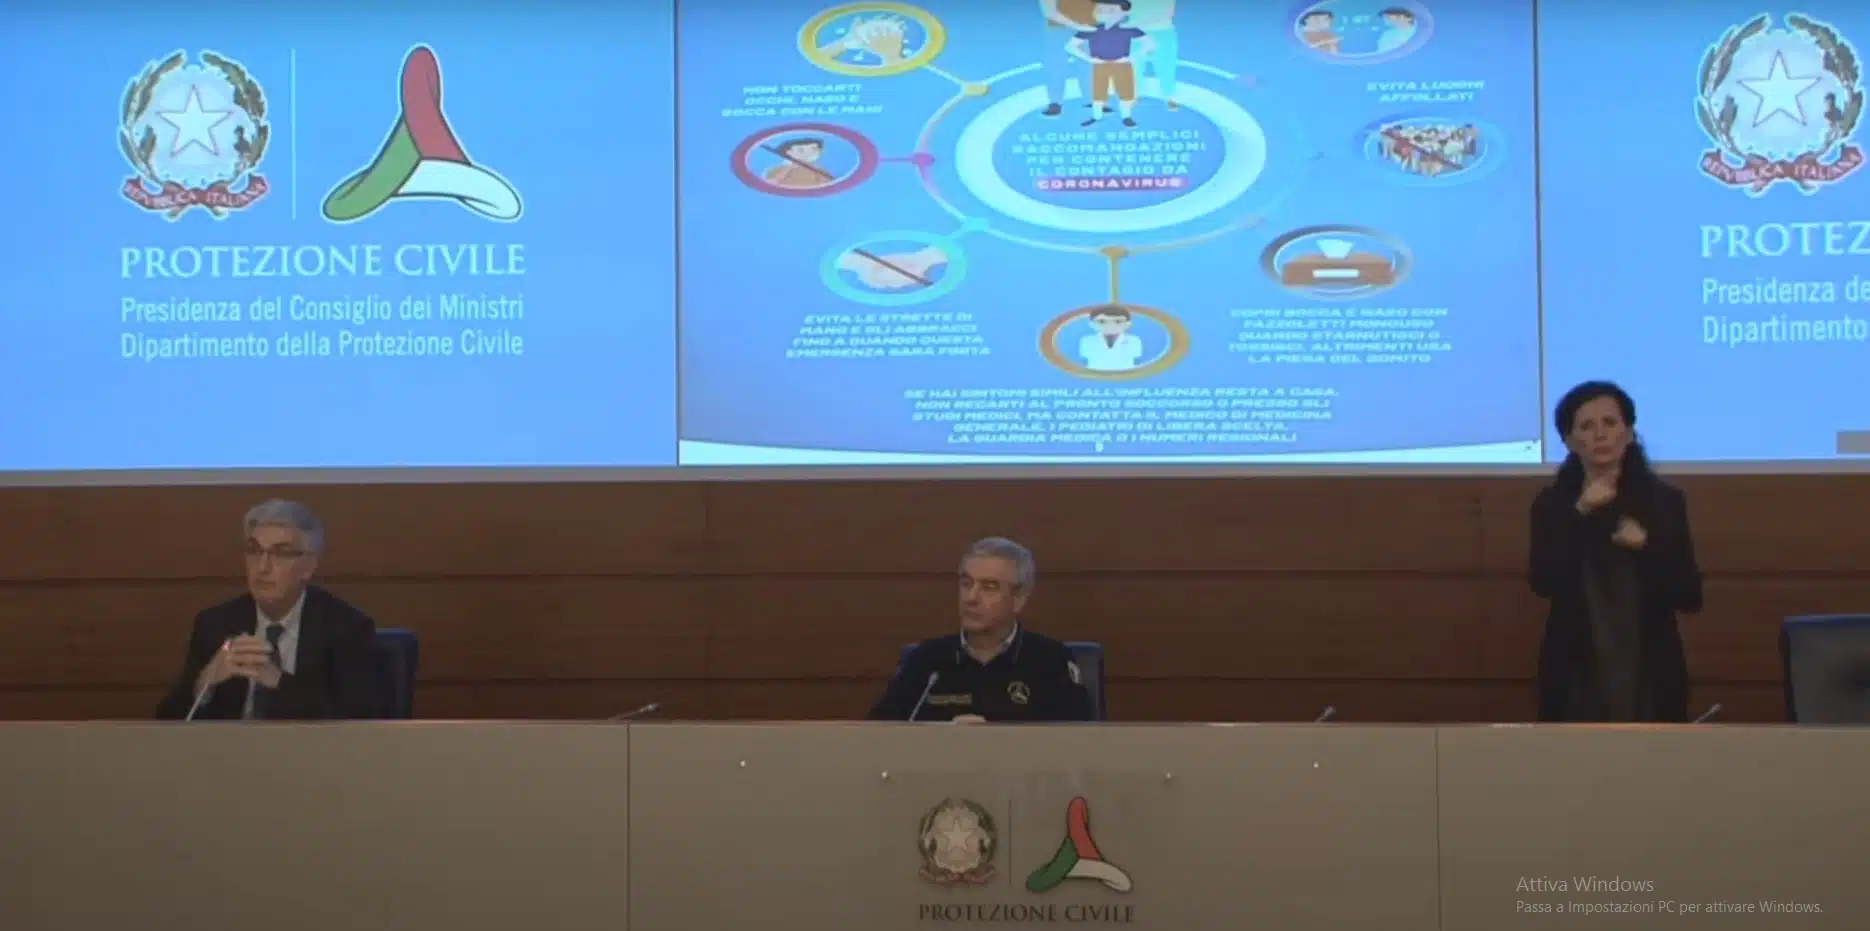 Conferenza stampa della Protezione Civile con Angelo Borrelli, Silvio Brusaferro e interprete lis